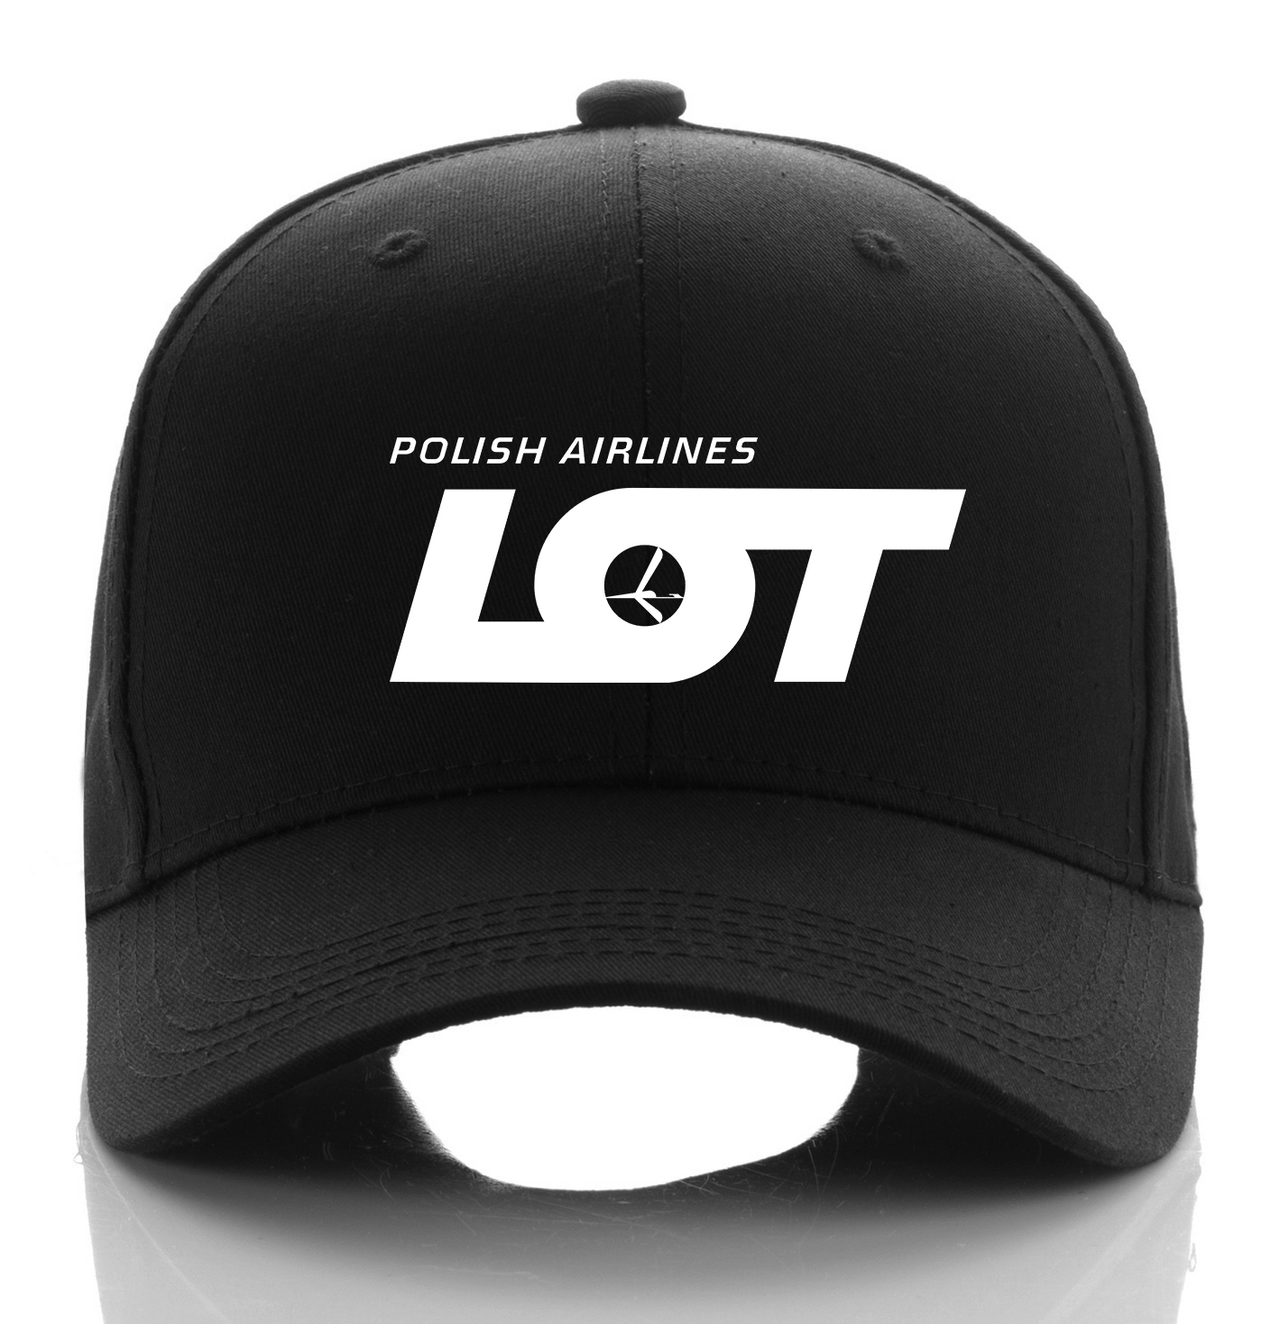 LOT AIRLINE DESIGNED CAP